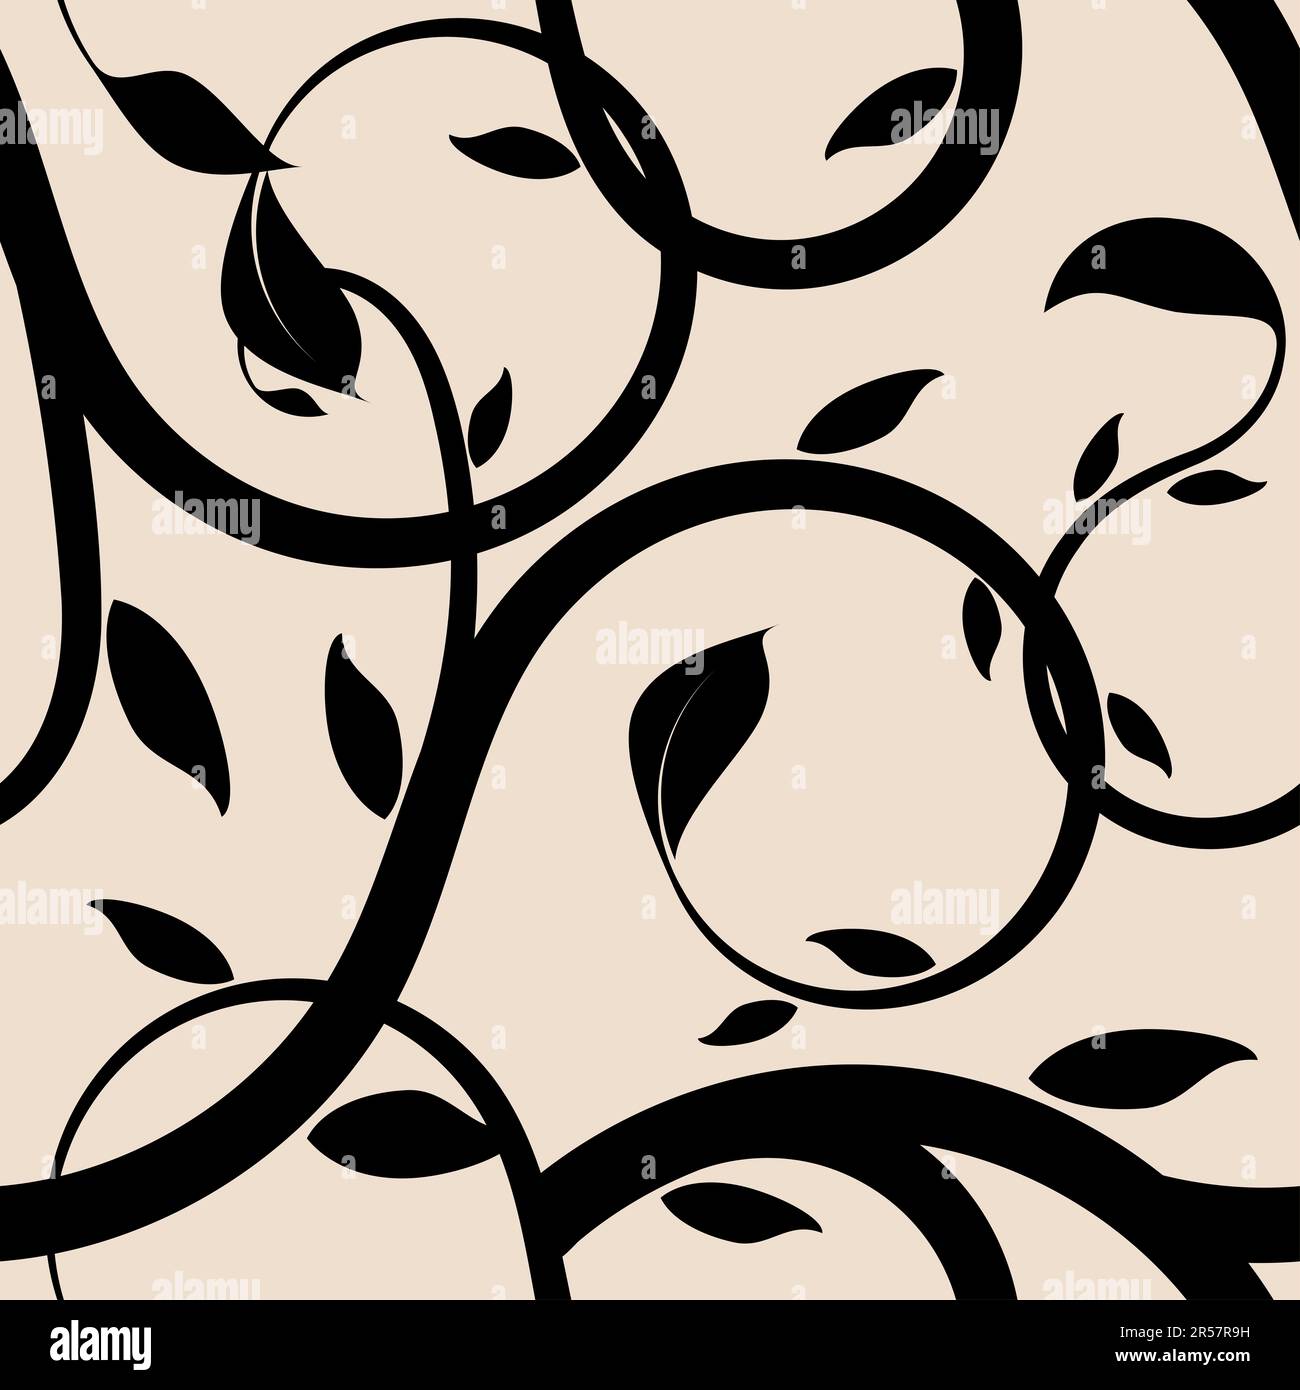 Seamless stylish flourish design pattern, vector illustration Stock Photo